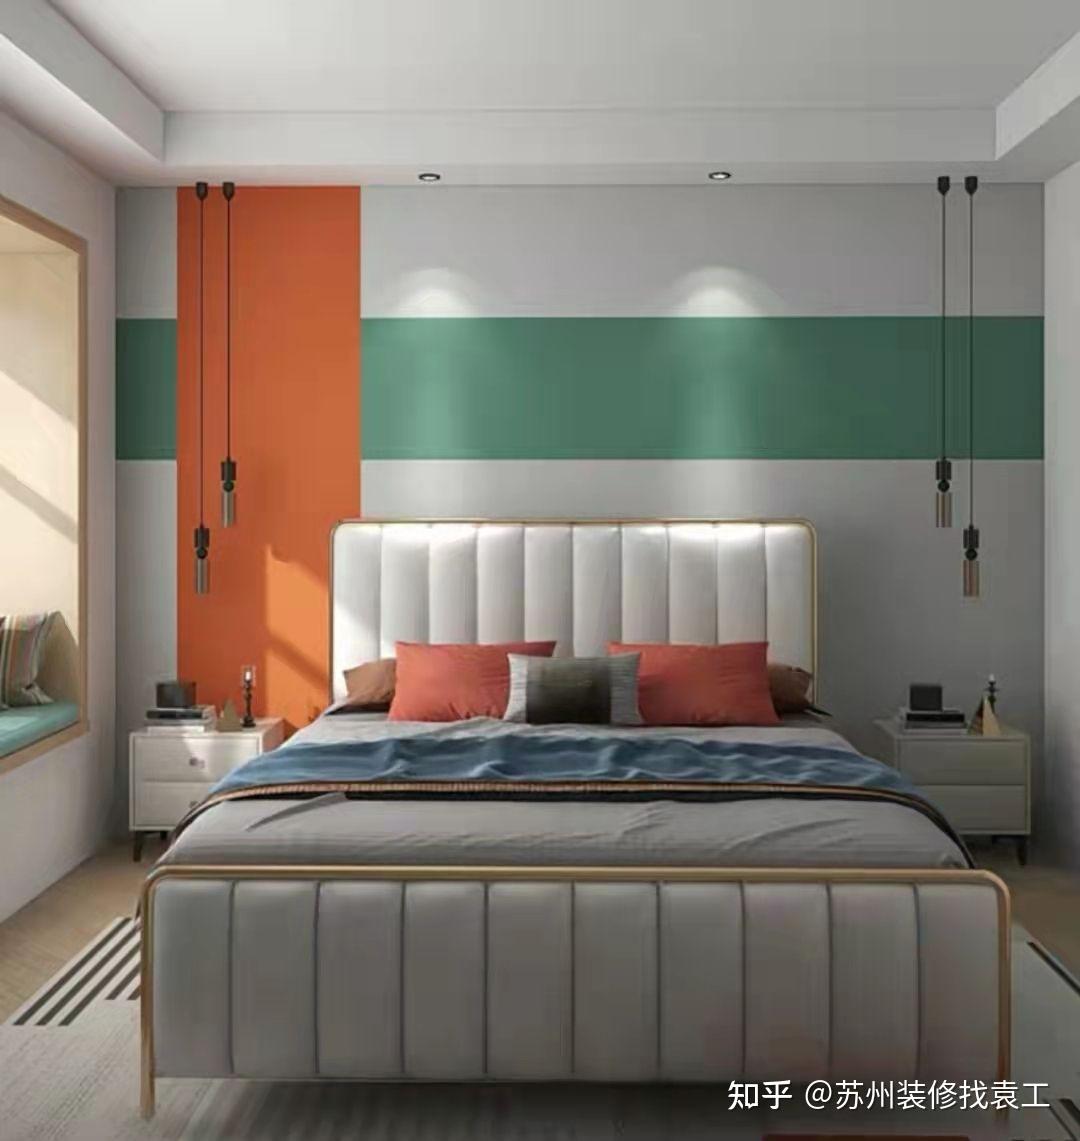 卧室艺术漆背景墙效果图-卧室床头艺术漆装修效果图 - 知乎